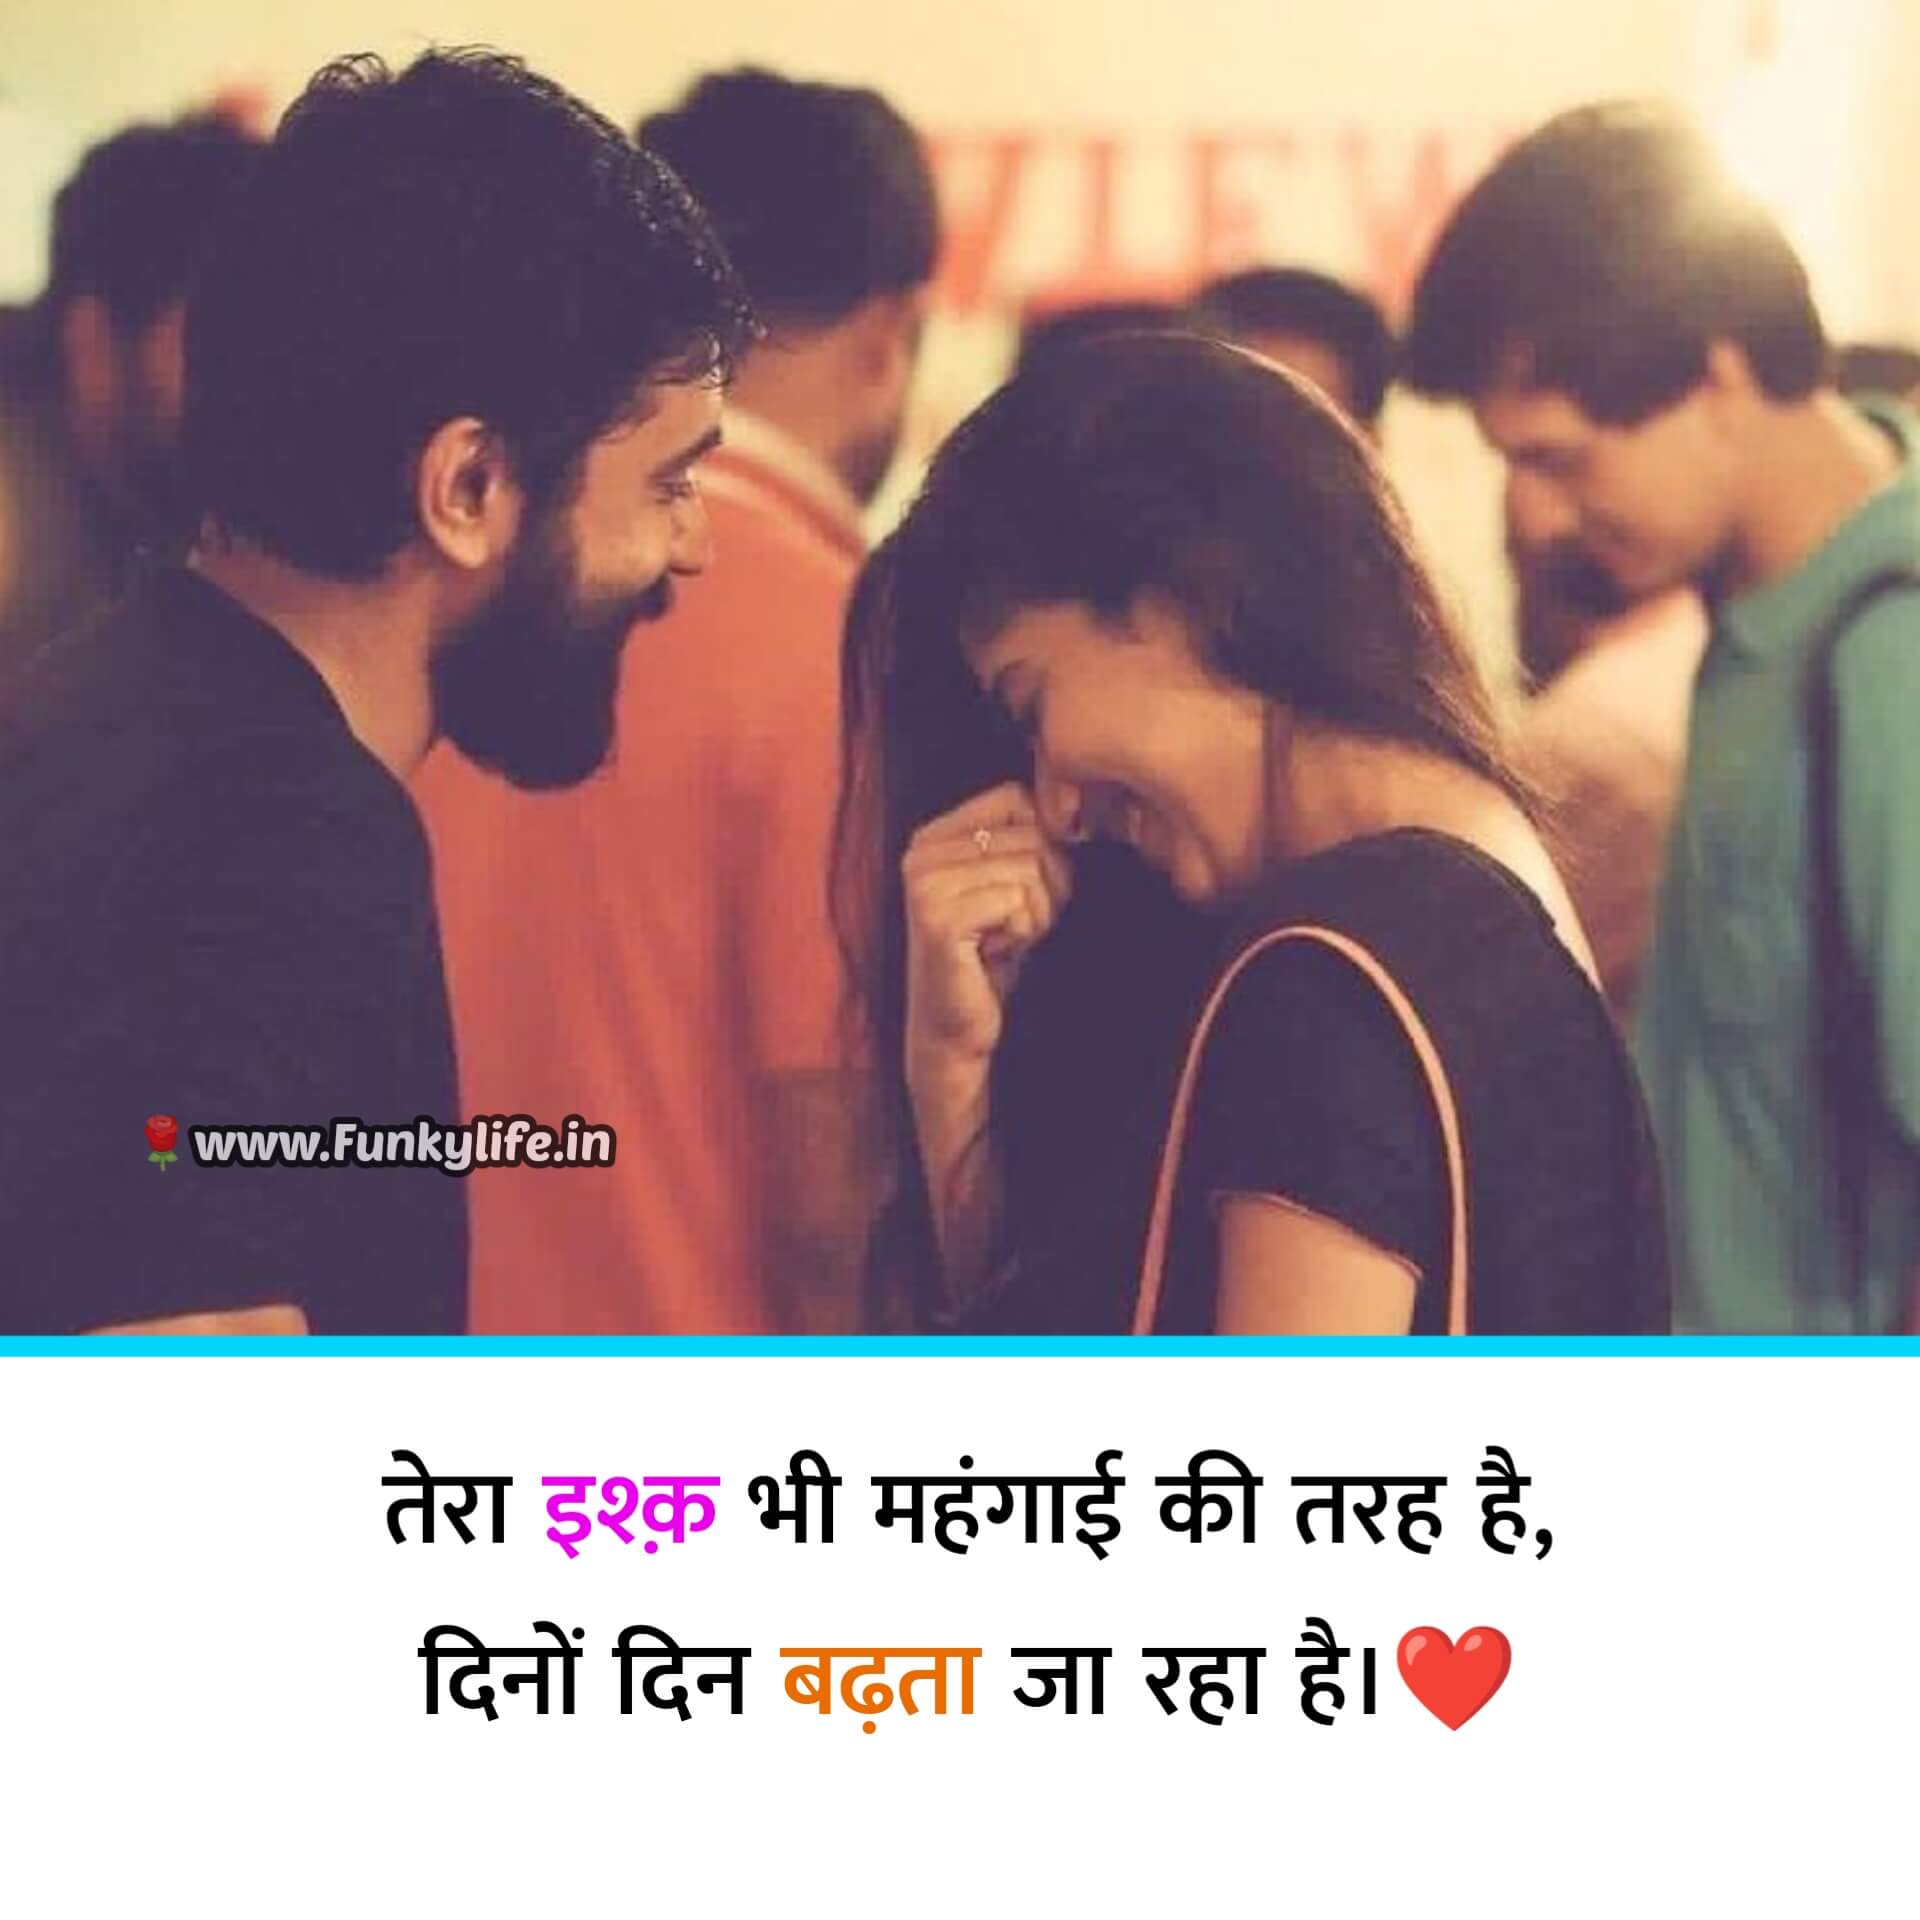 Love Romantic Shayari